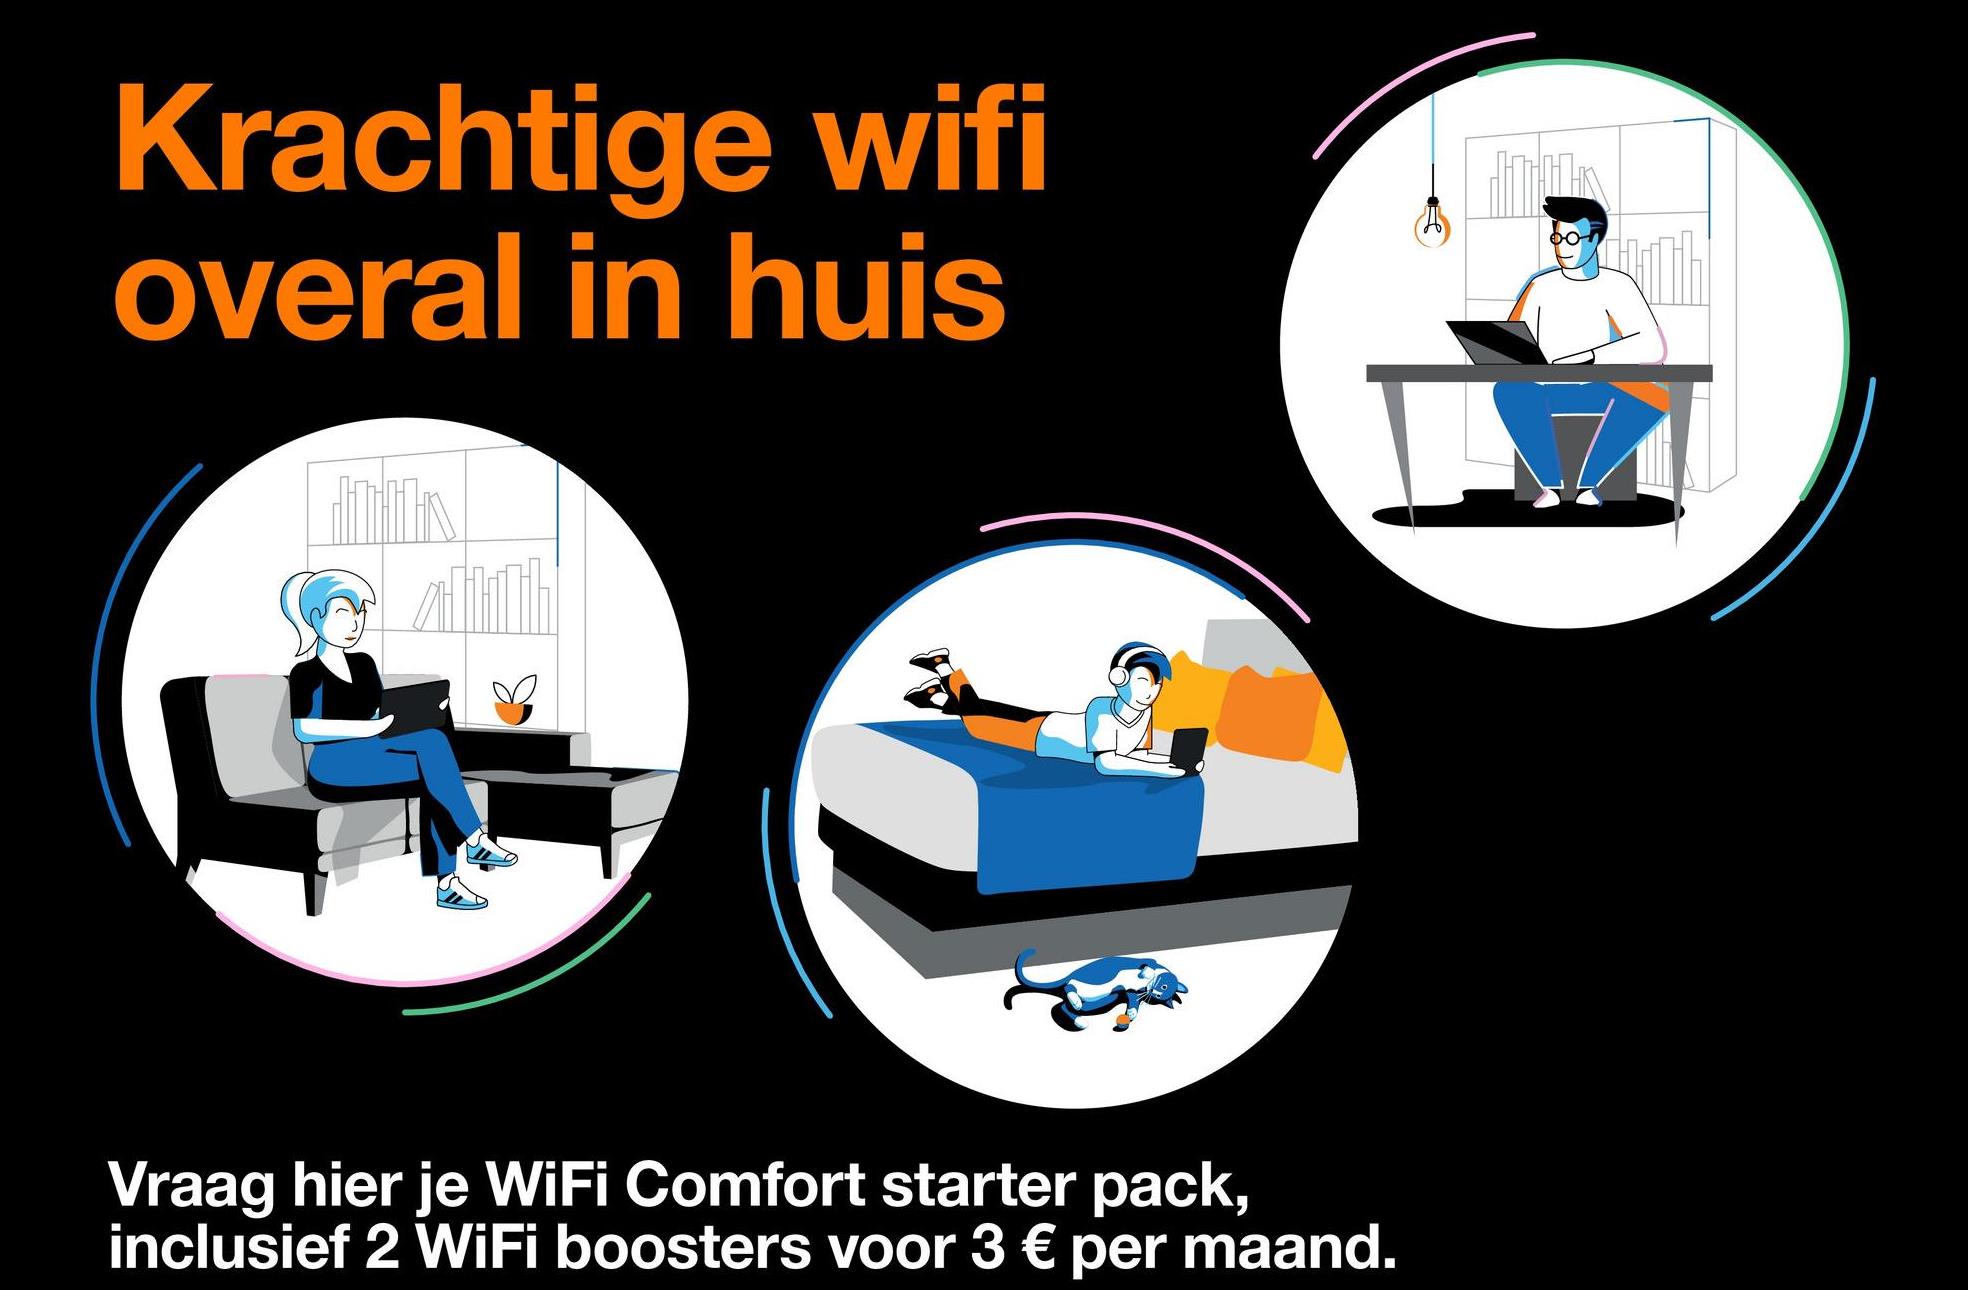 Krachtige wifi
overal in huis
Jobs
Vraag hier je WiFi Comfort starter pack,
inclusief 2 WiFi boosters voor 3 € per maand.